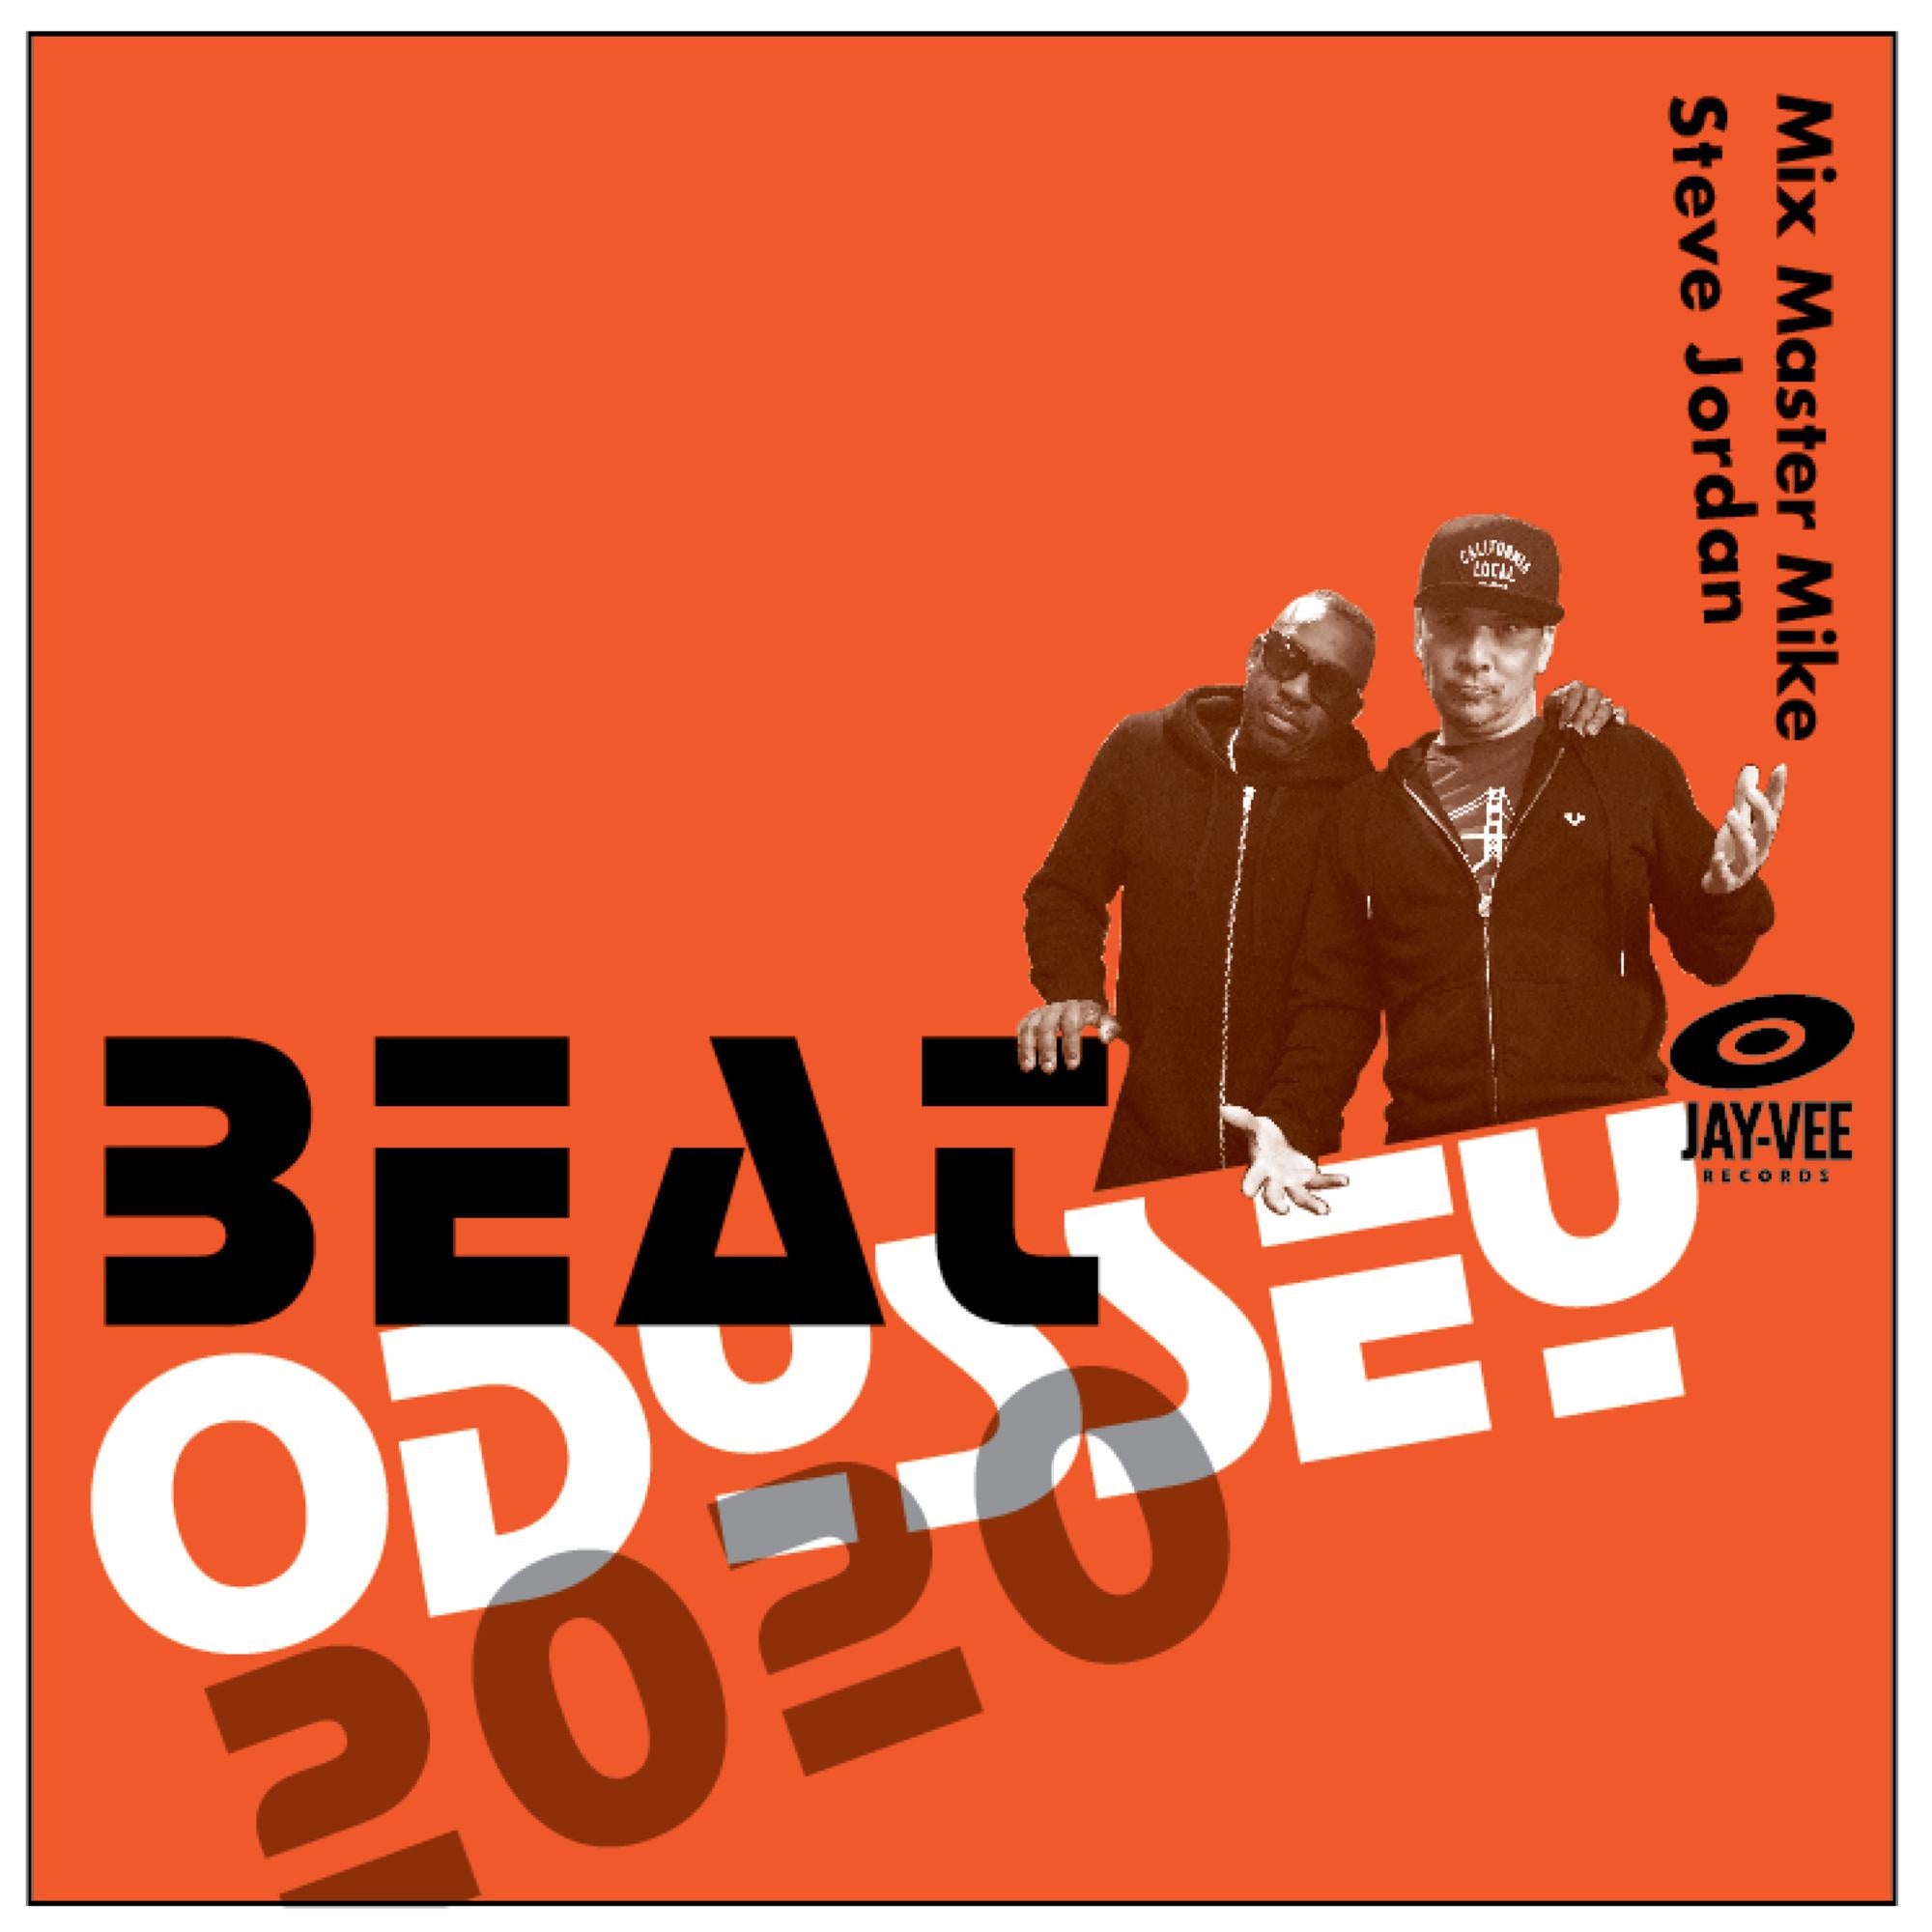 Mix Master Mike & Steve Jordan - Beat Odyssey 2020 - New LP Record 2020 Jay-Vee Vinyl - Hip Hop